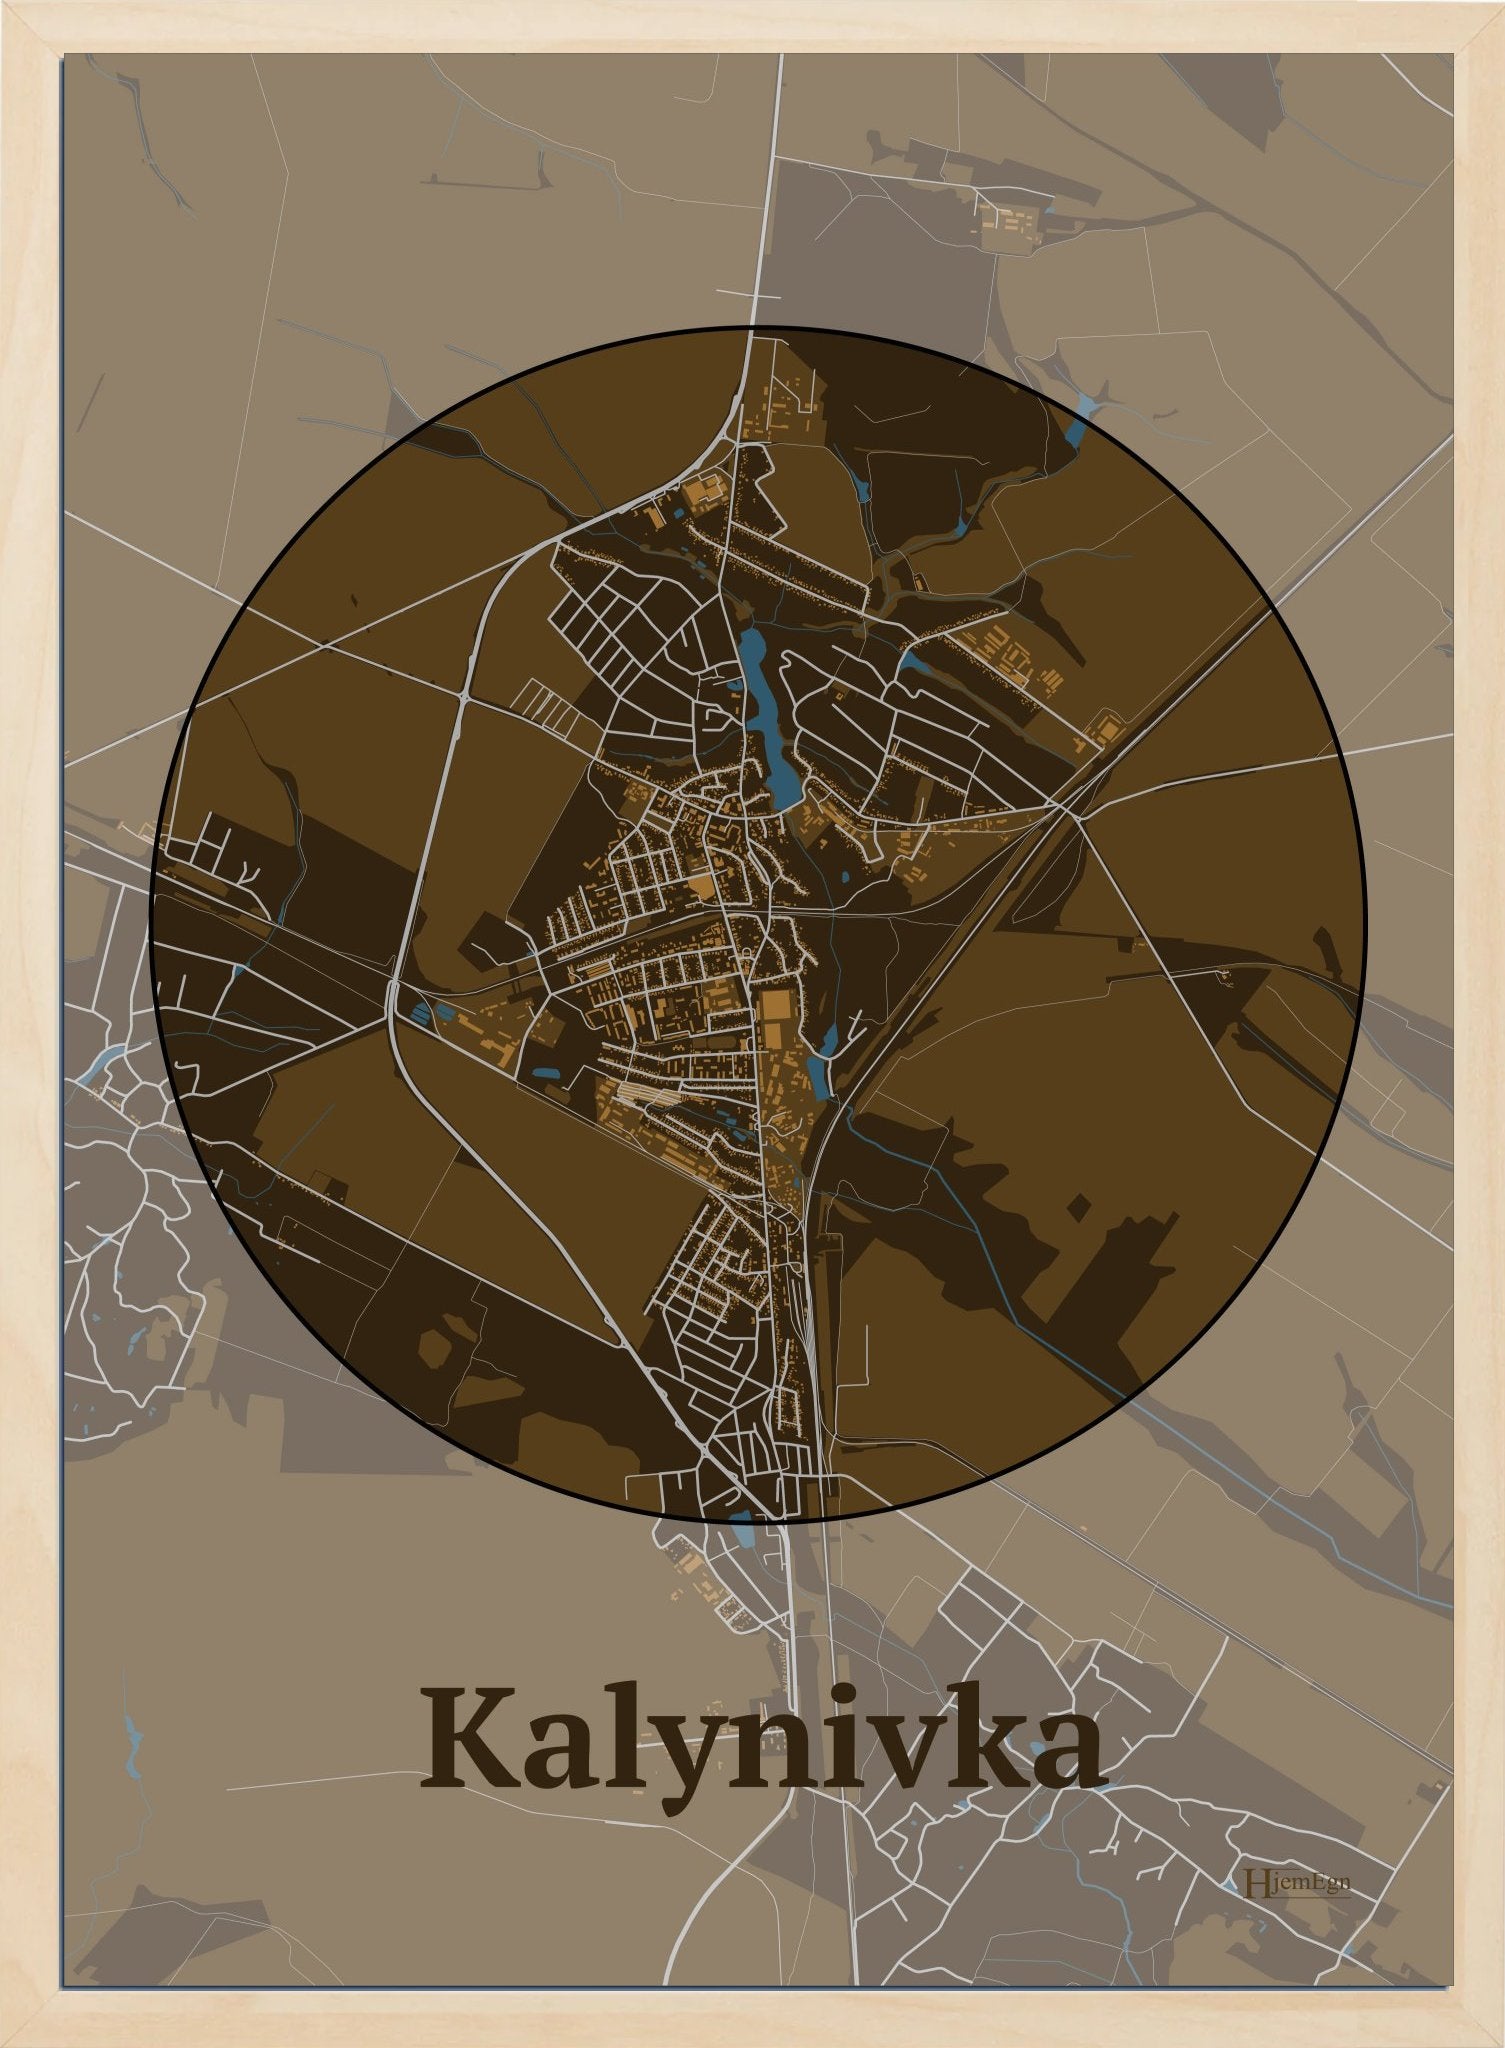 Kalynivka plakat i farve mørk brun og HjemEgn.dk design centrum. Design bykort for Kalynivka